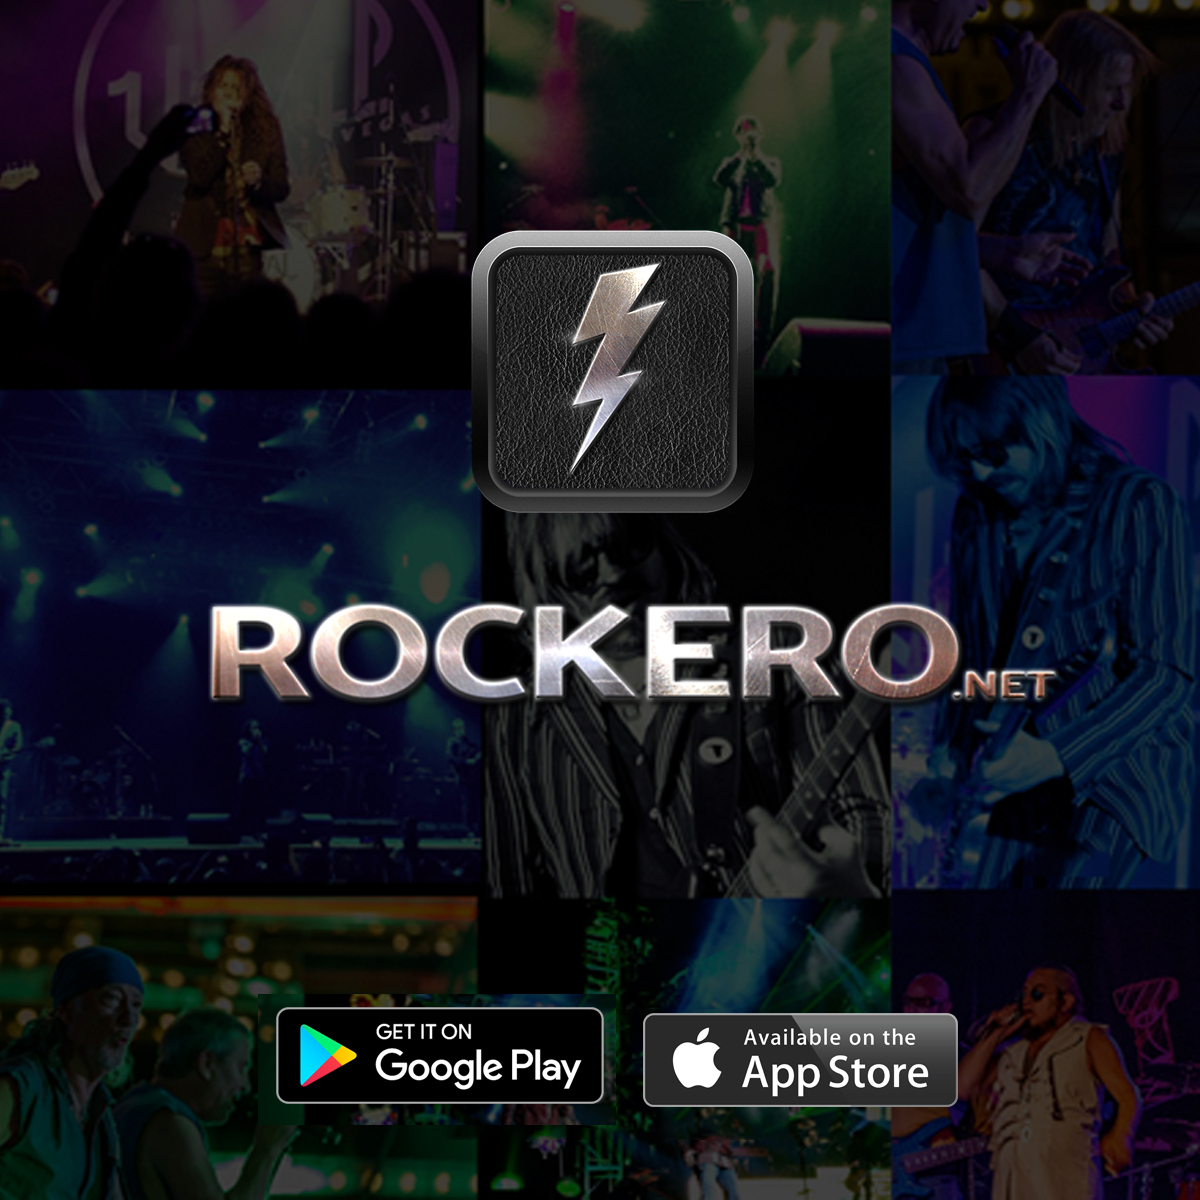 (c) Rockero.net